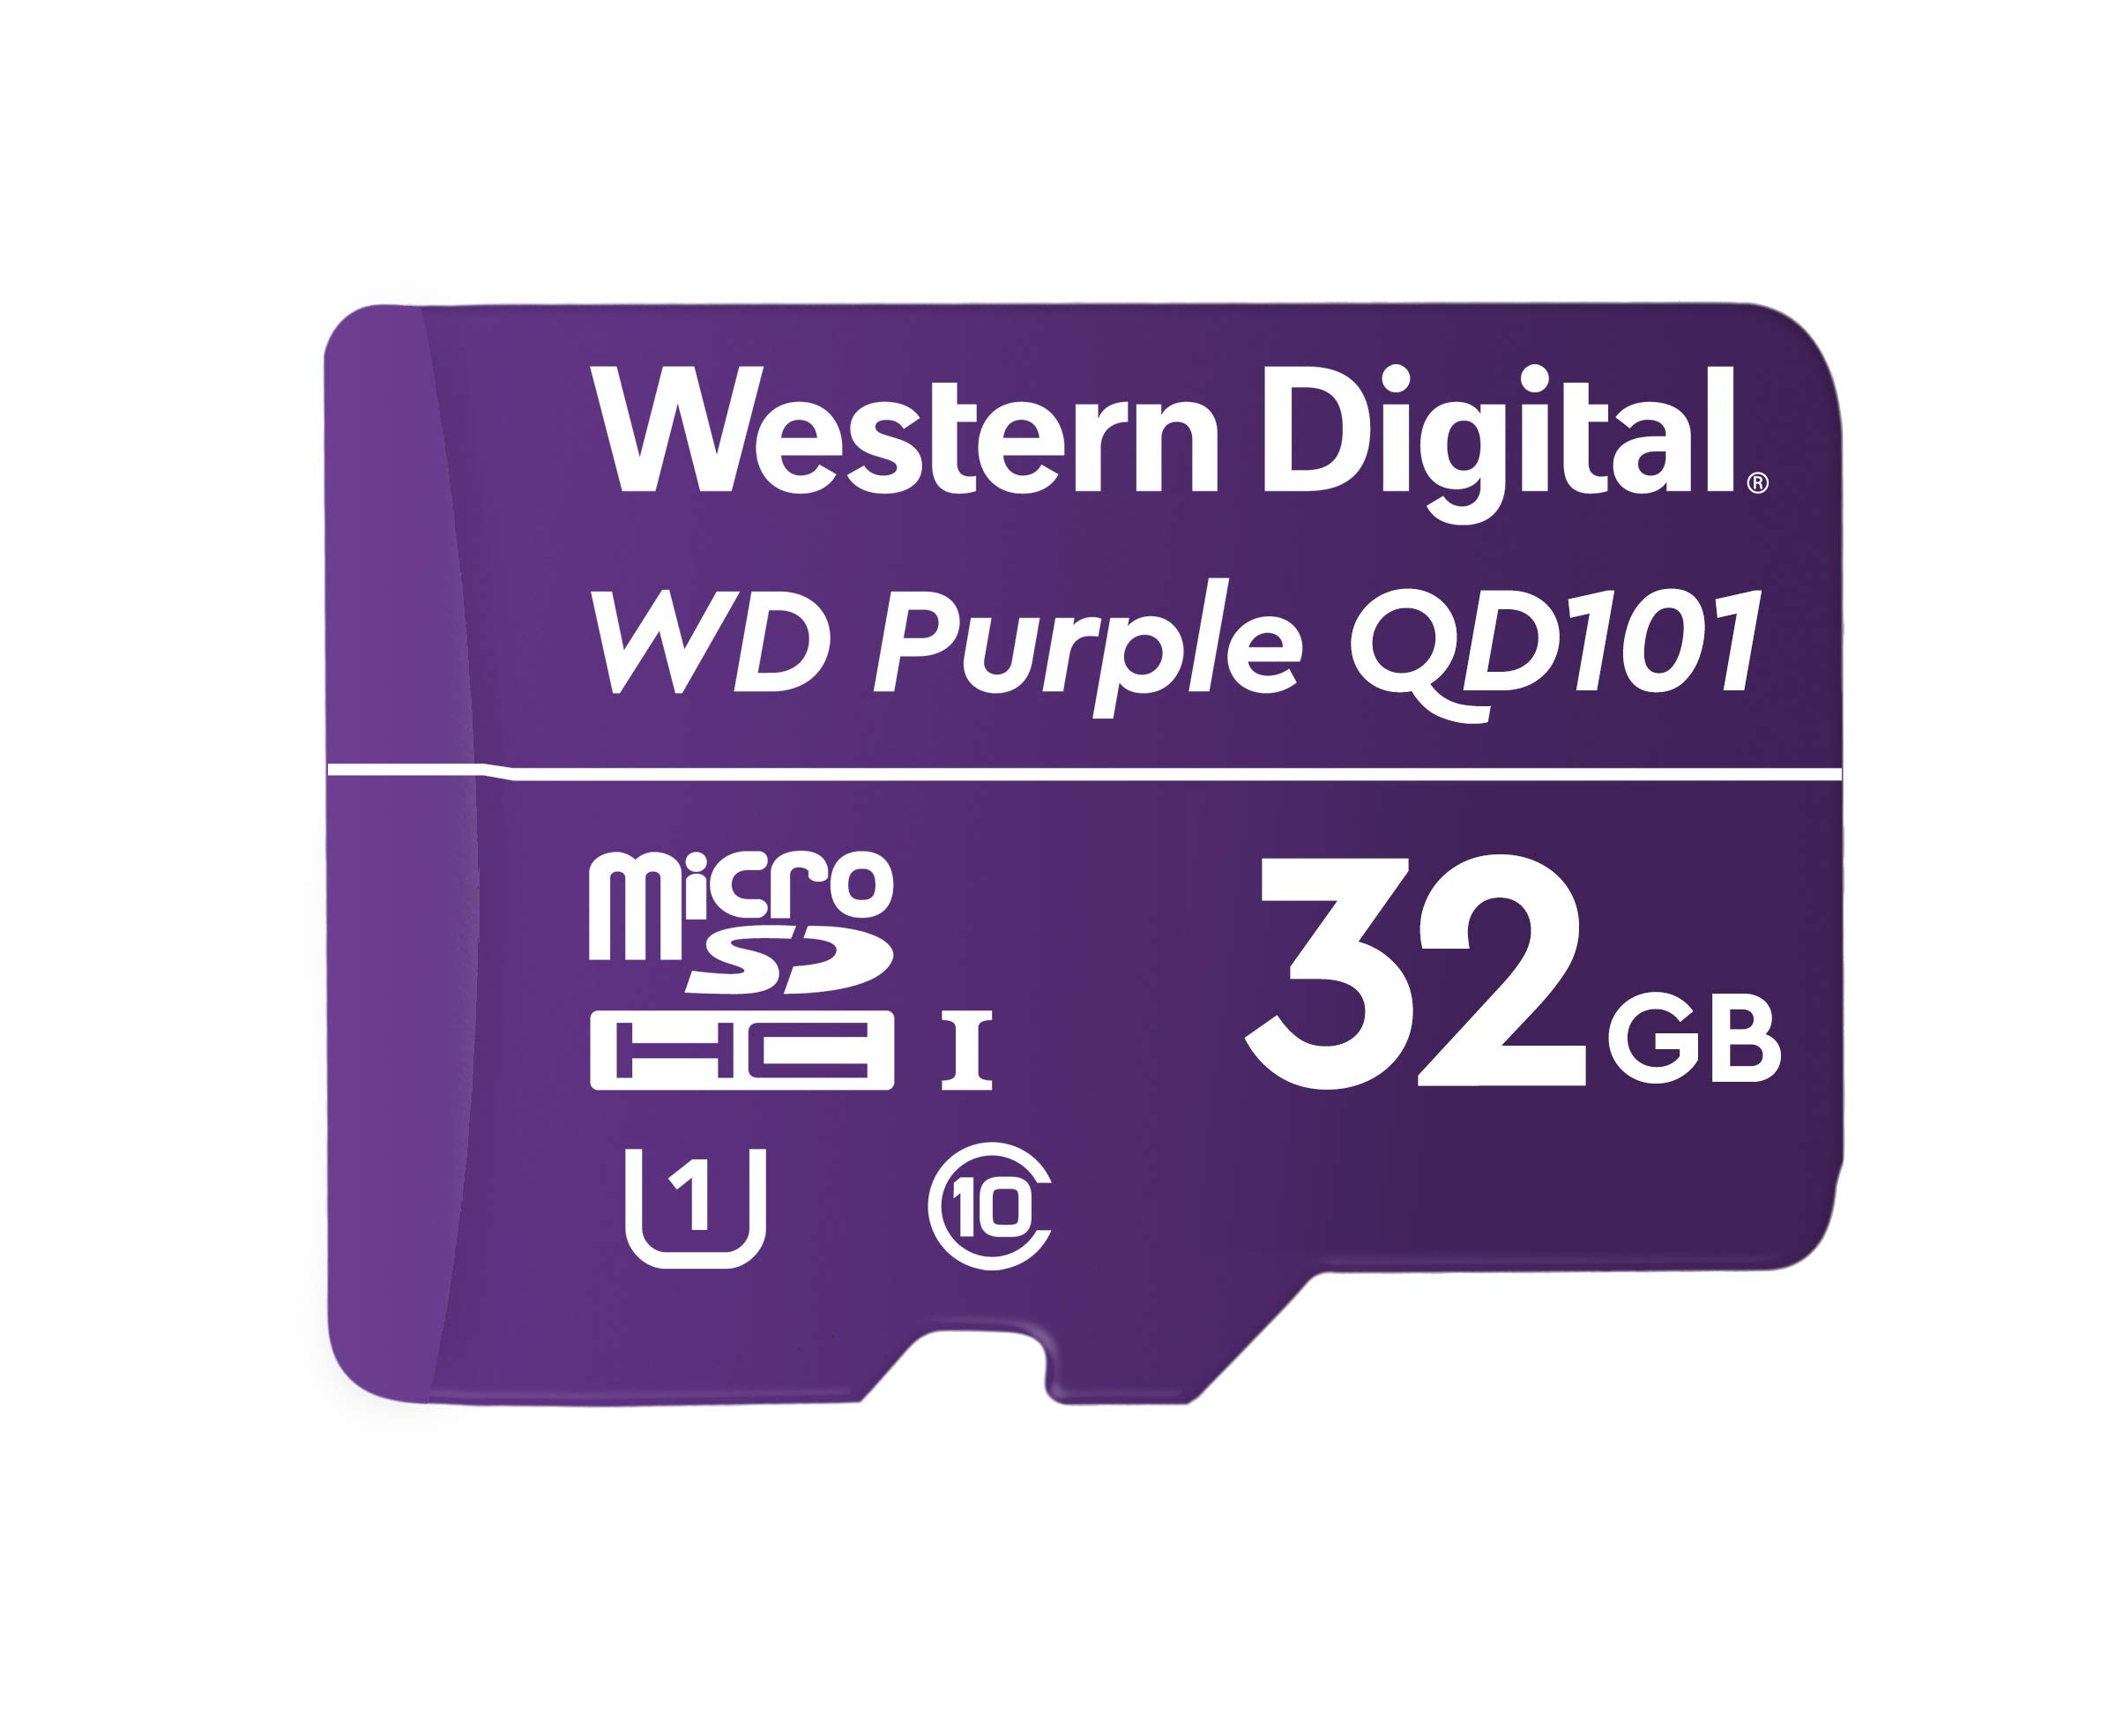 WD PURPLE QD101 MICROSD 32GB